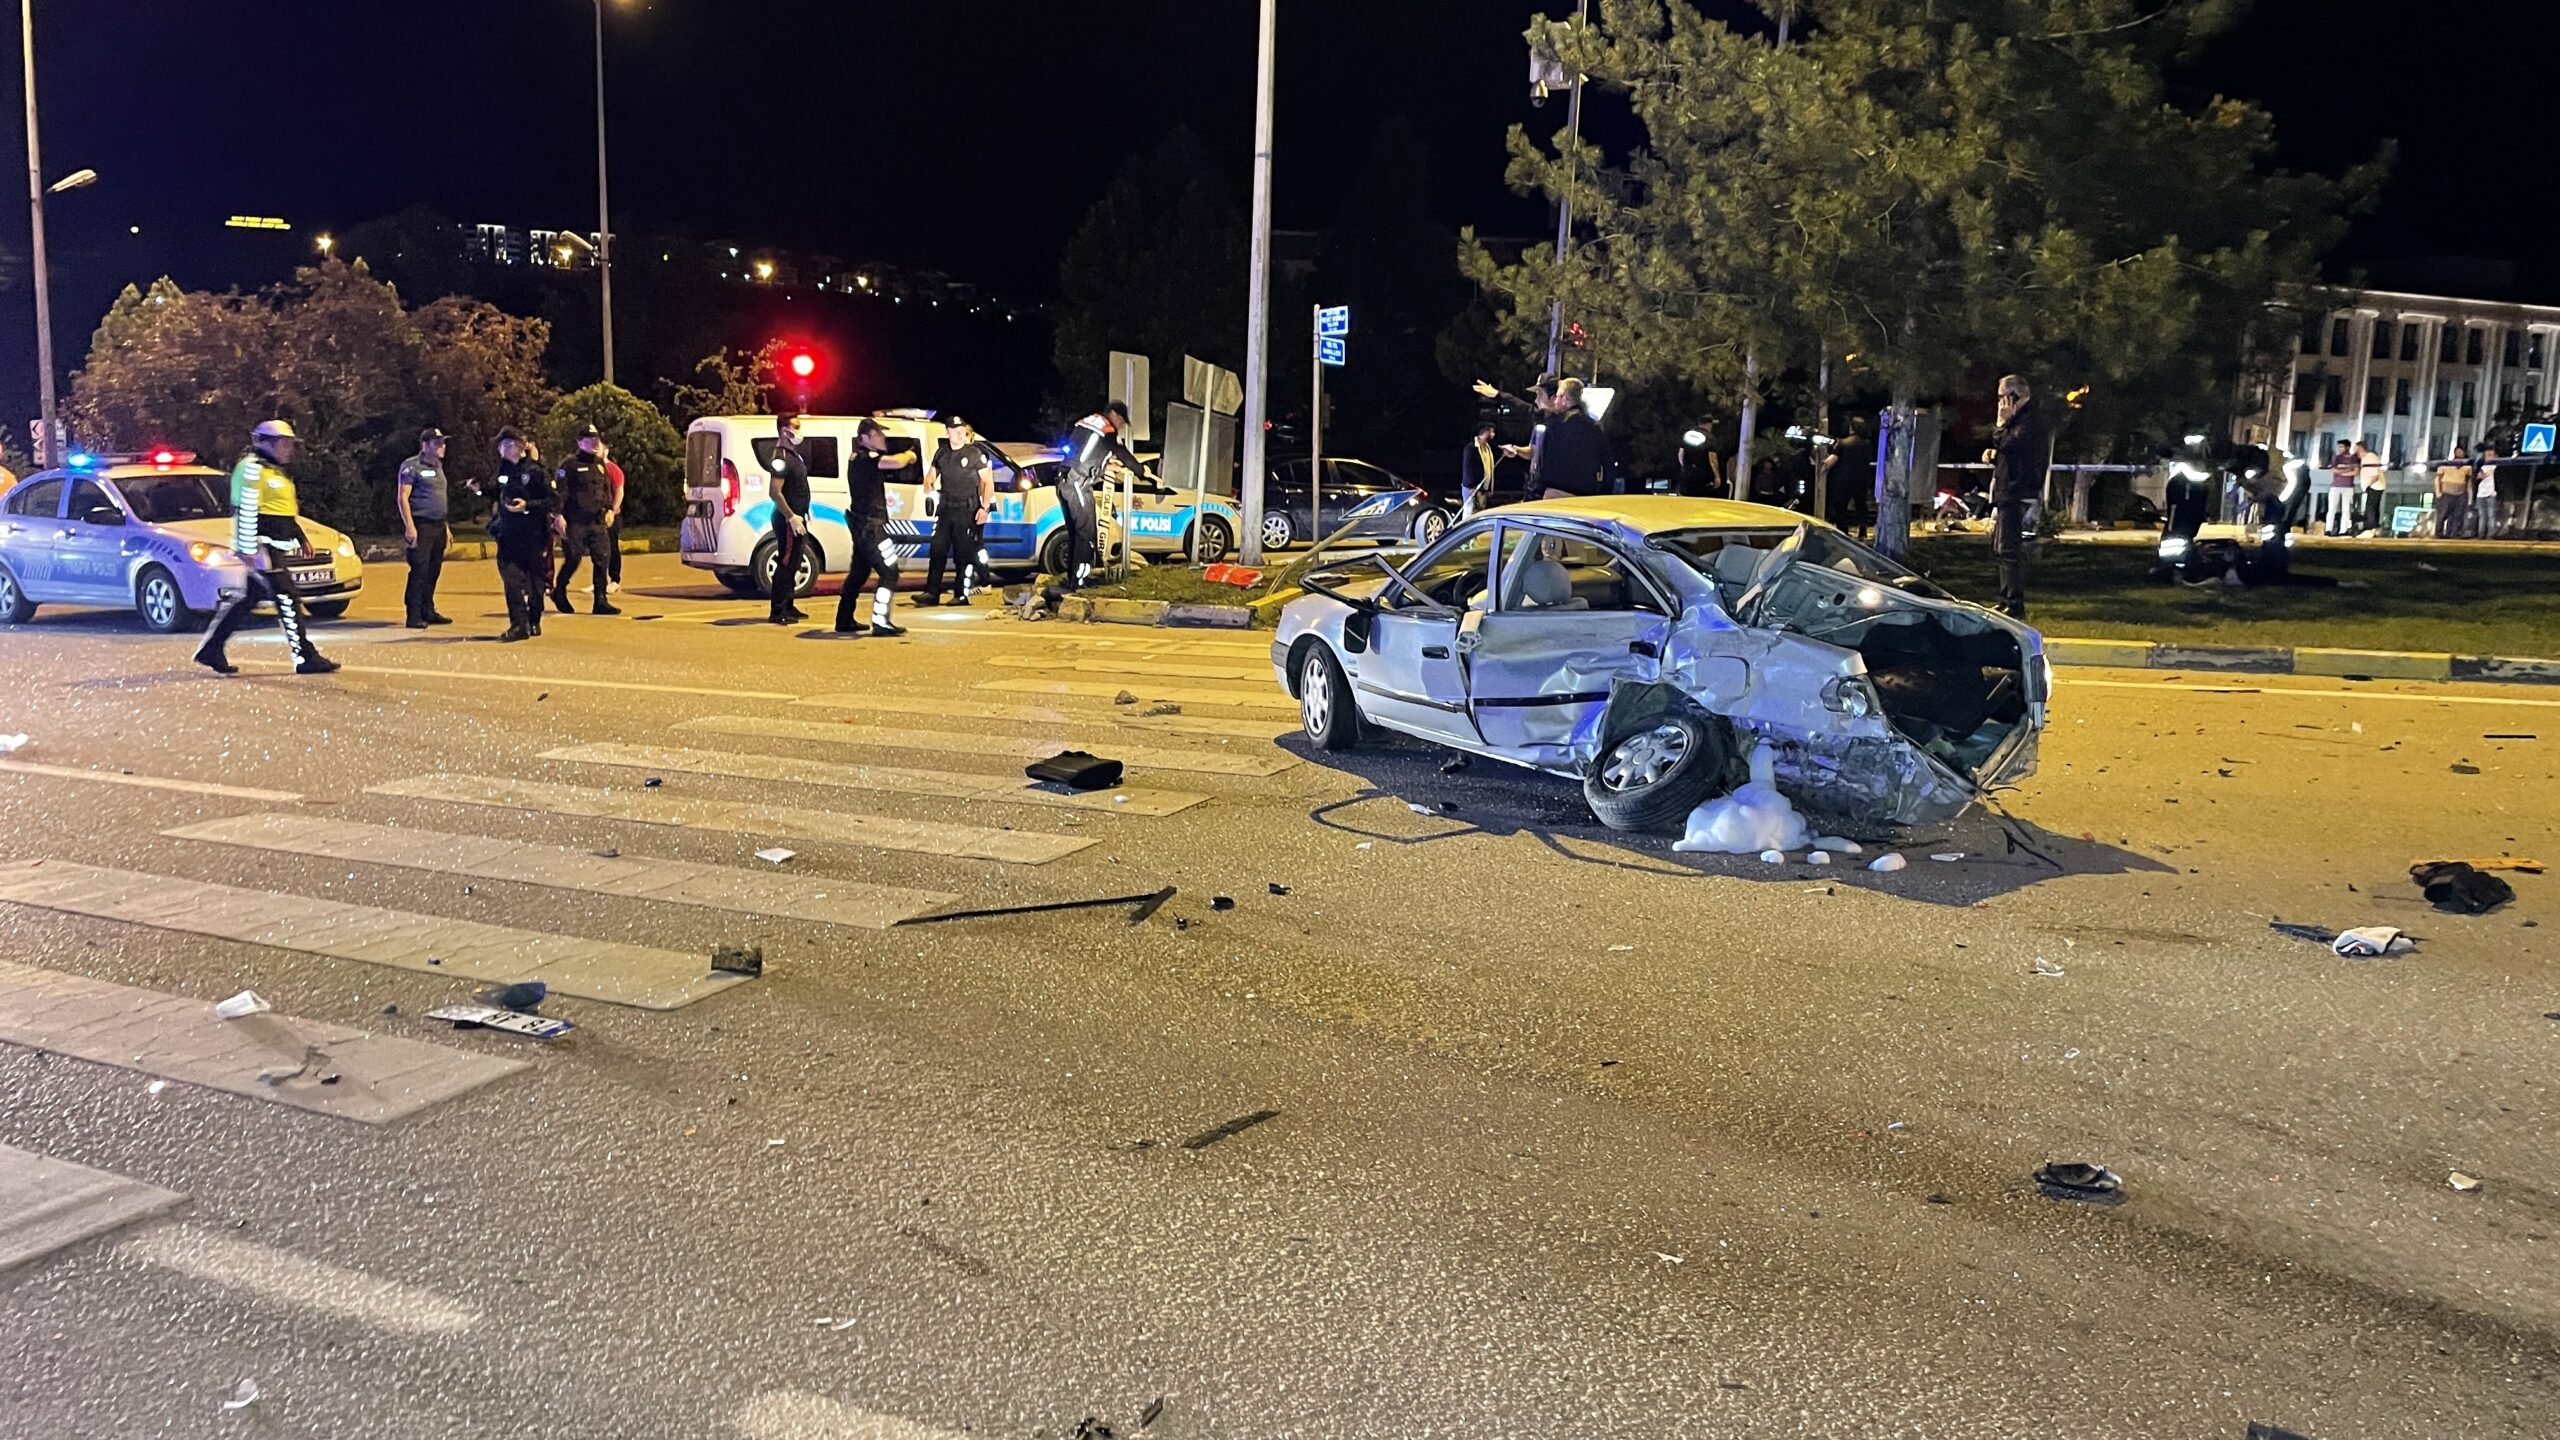 Karabük’te iki otomobil çarpıştı, 2 kişi öldü, 2 kişi yaralandı